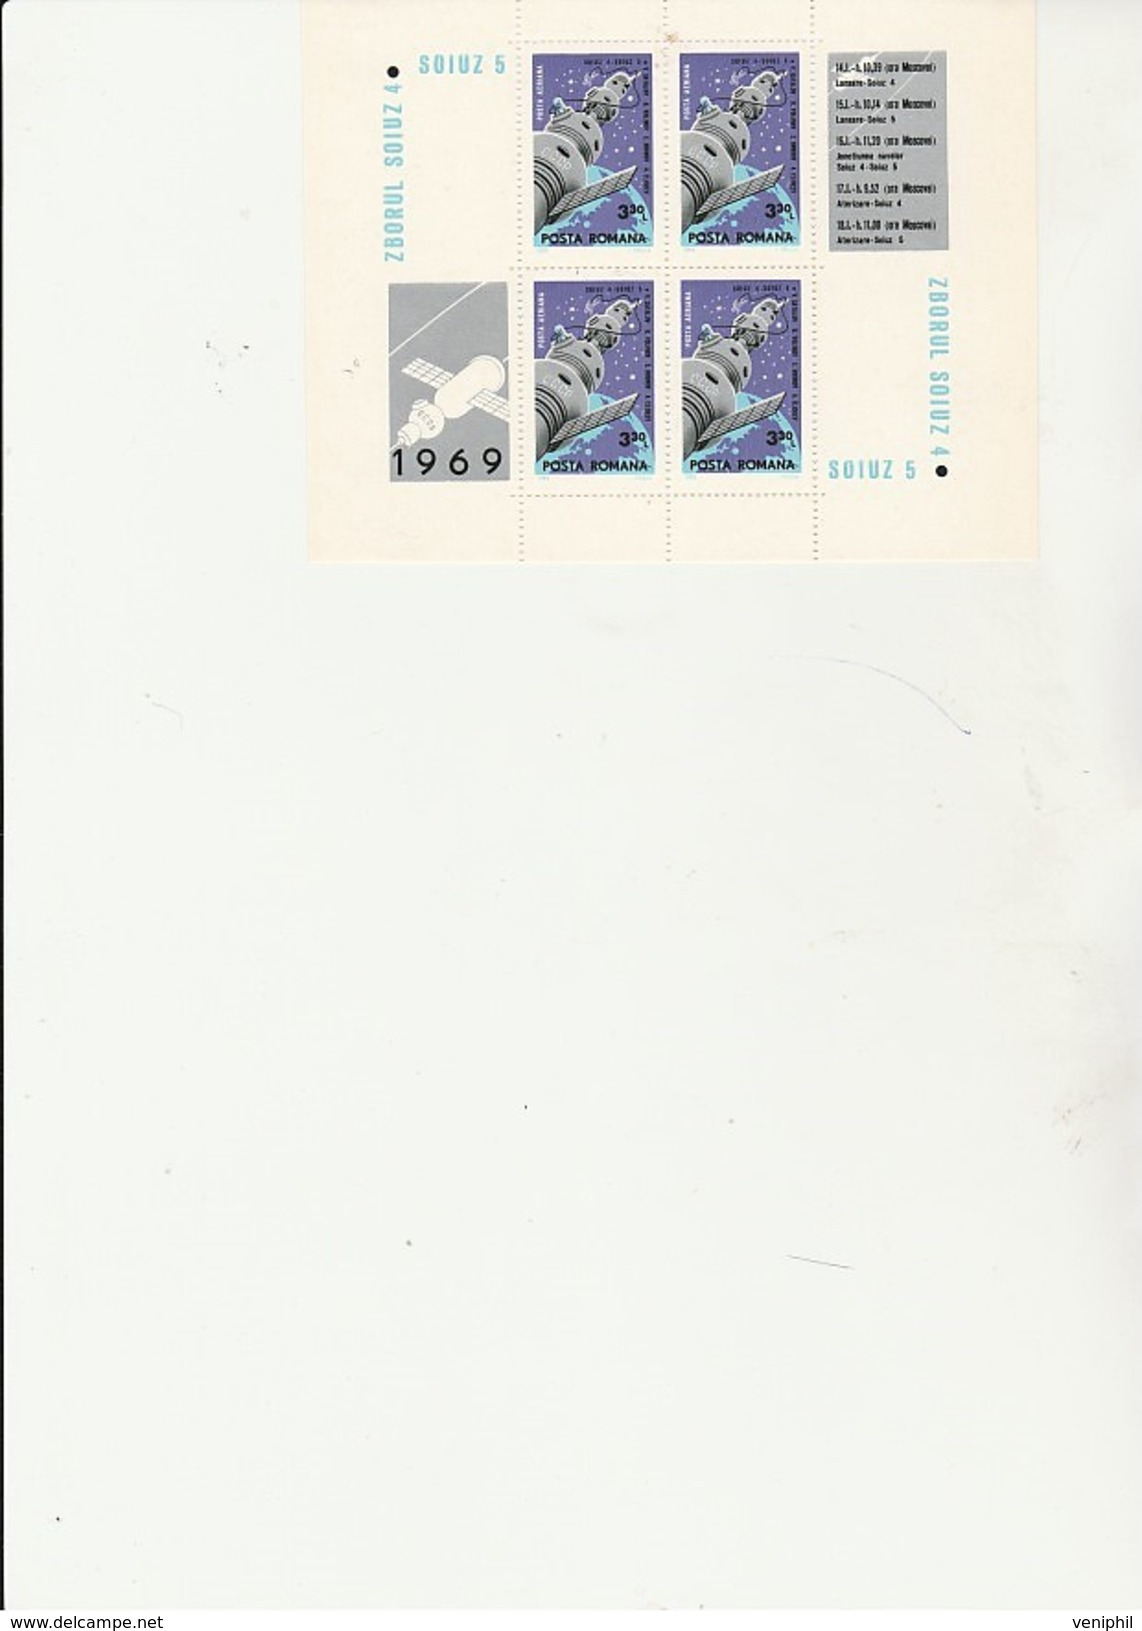 ROUMANIE - BLOC FEUILLET N° 72  SOIUZ 5 - NEUF  ANNEE 1968  COTE : 18,50 € - Europa